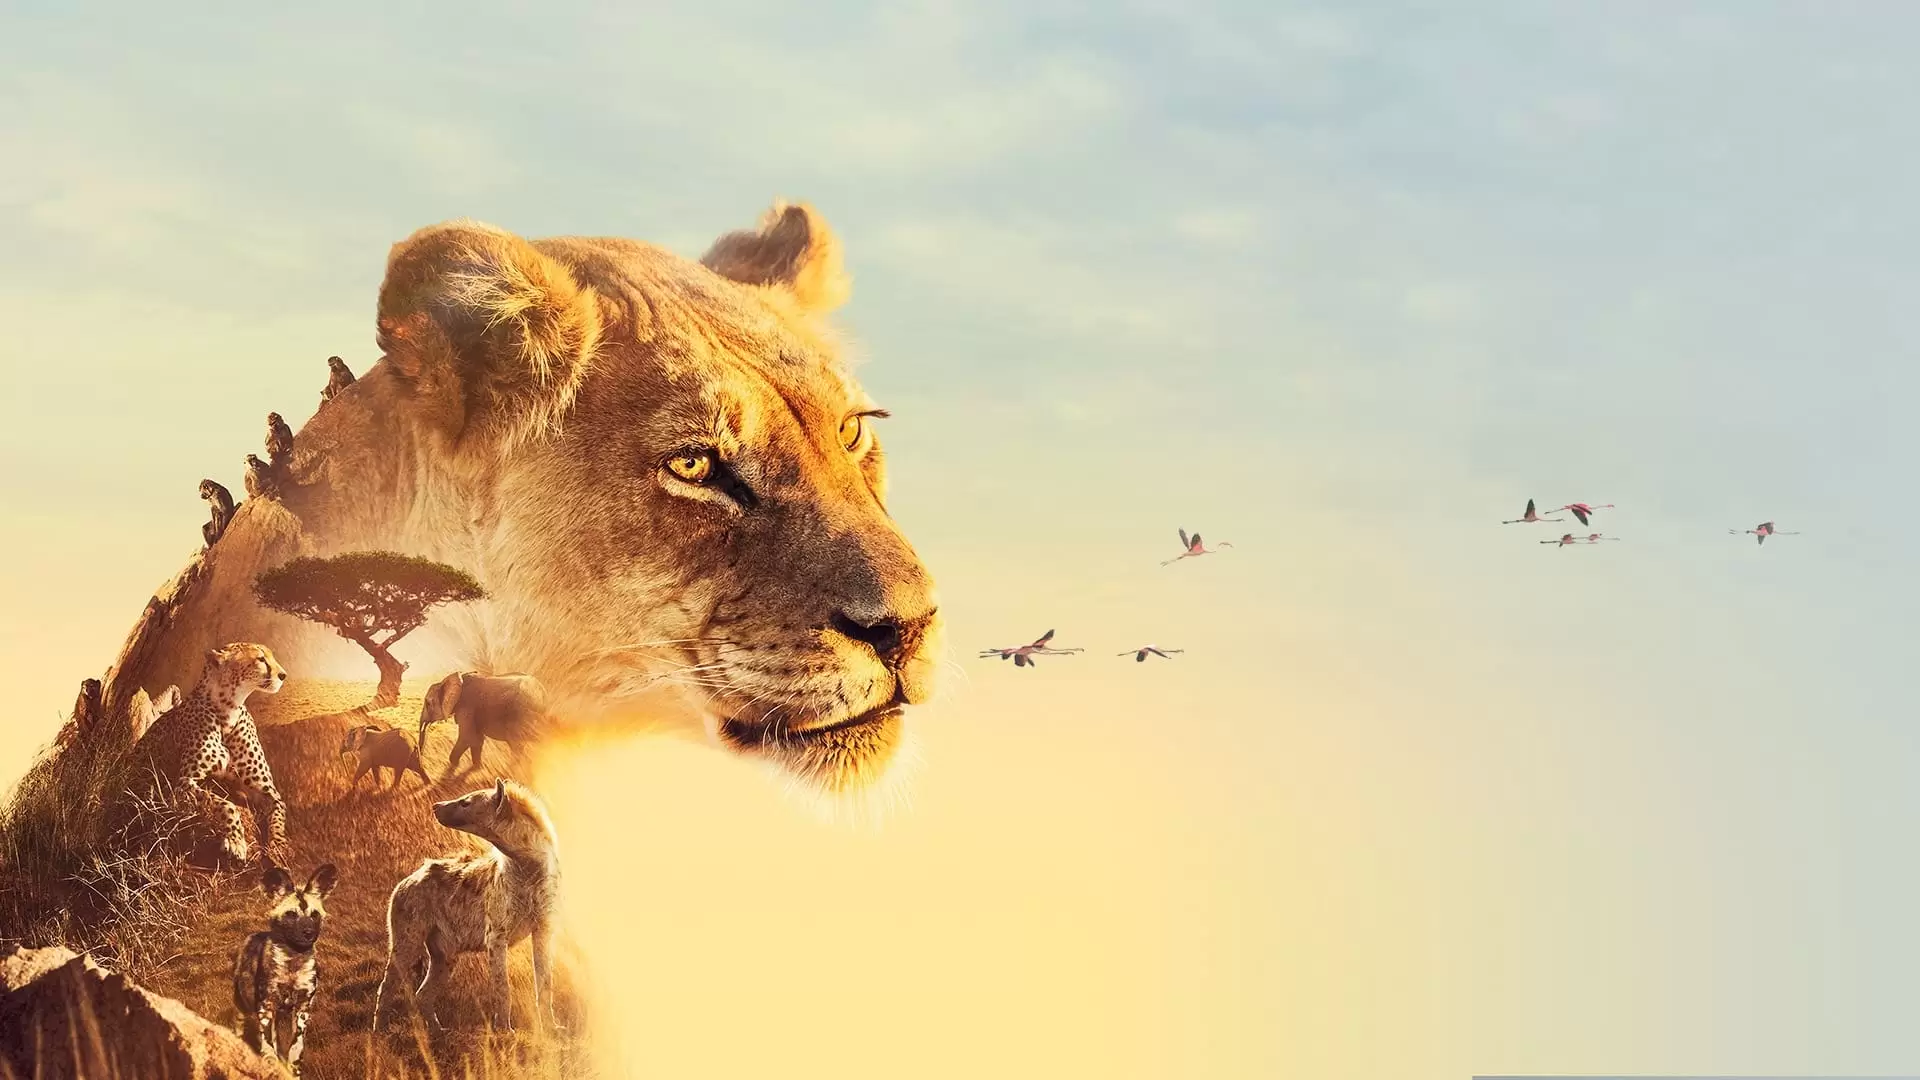 دانلود مستند Serengeti 2019 با زیرنویس فارسی